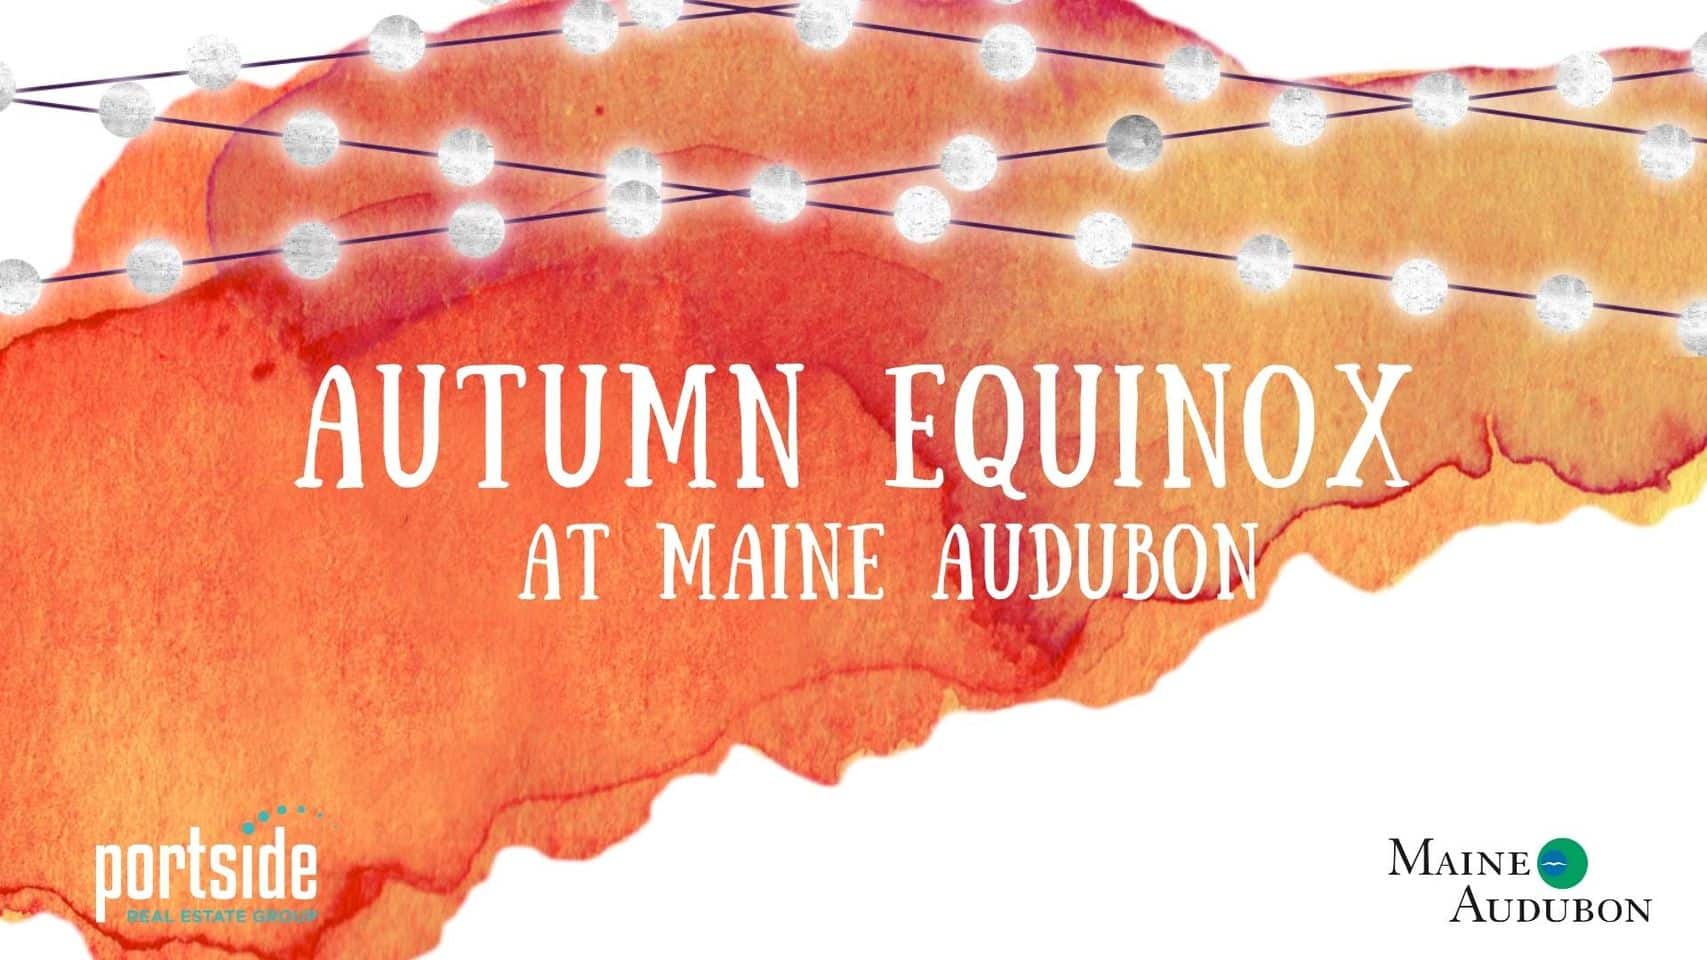 Autumn Equinox at Maine Audubon